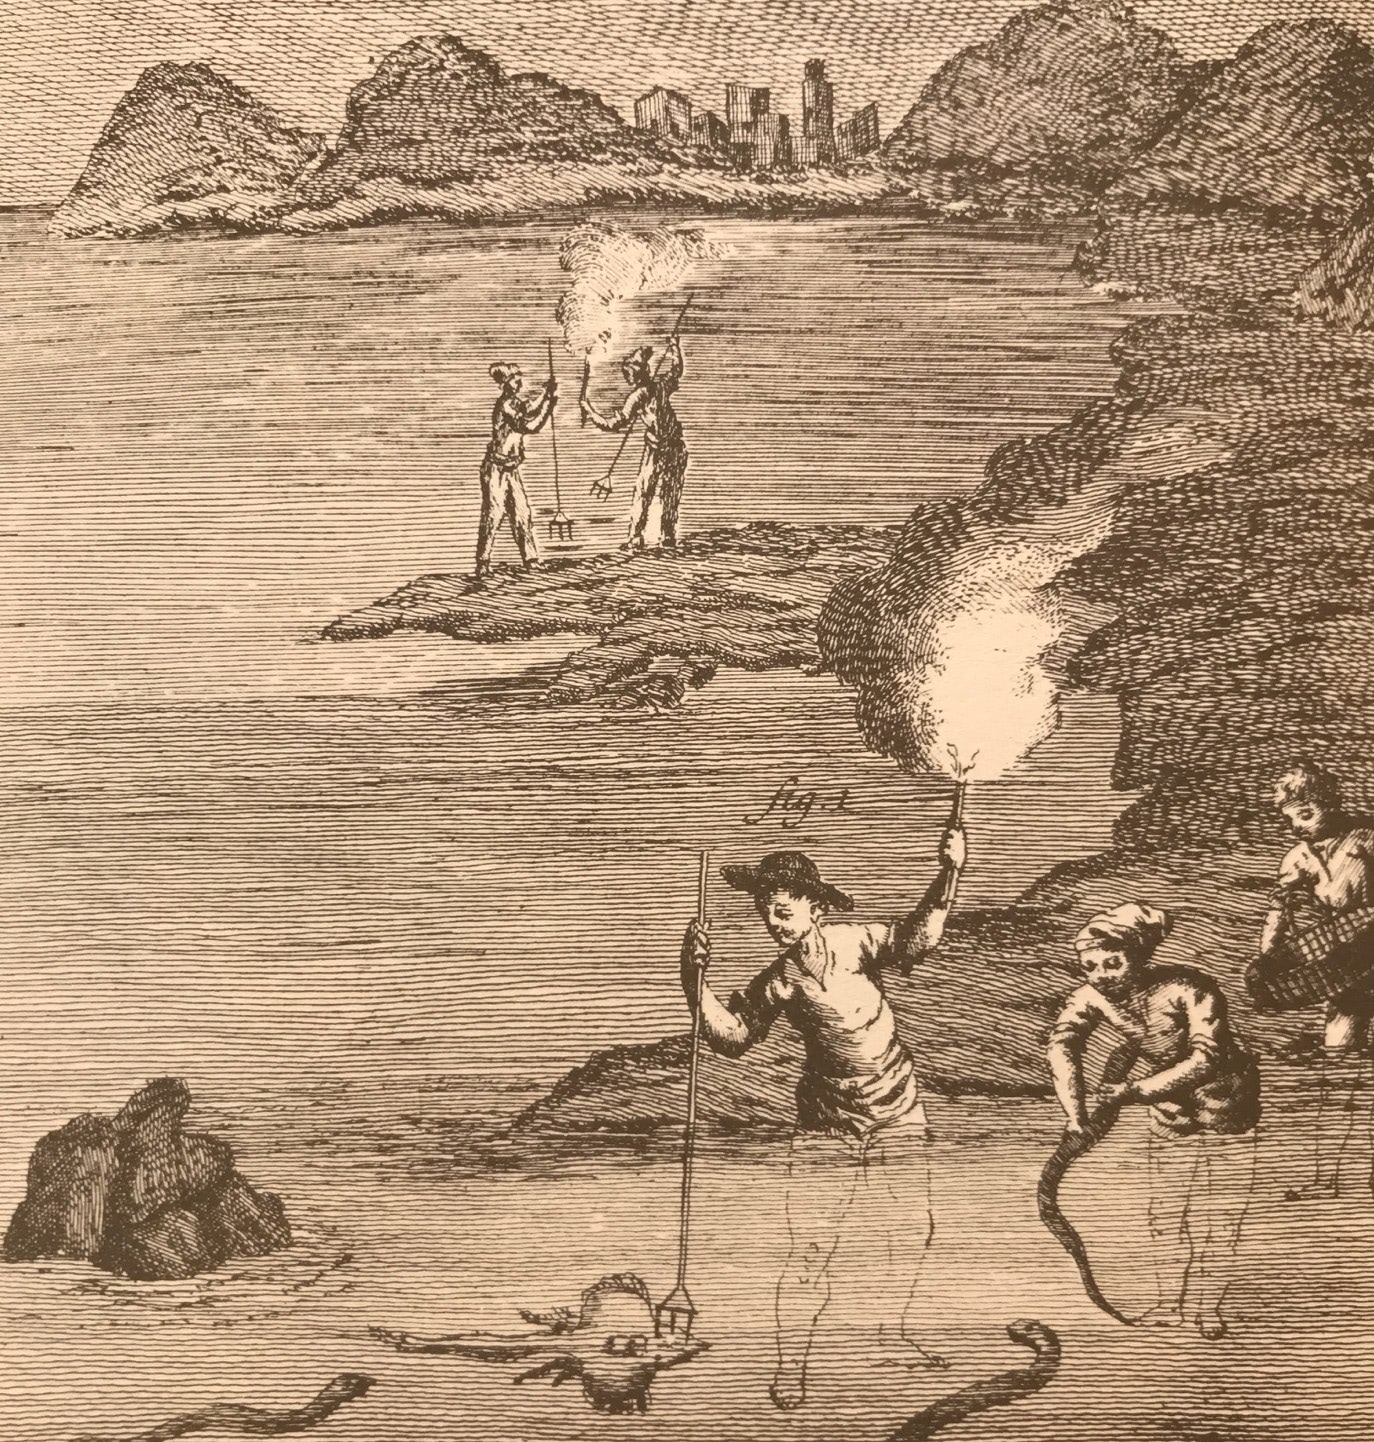 Ilustración antigua que muestra técnicas de pesca tradicionales.